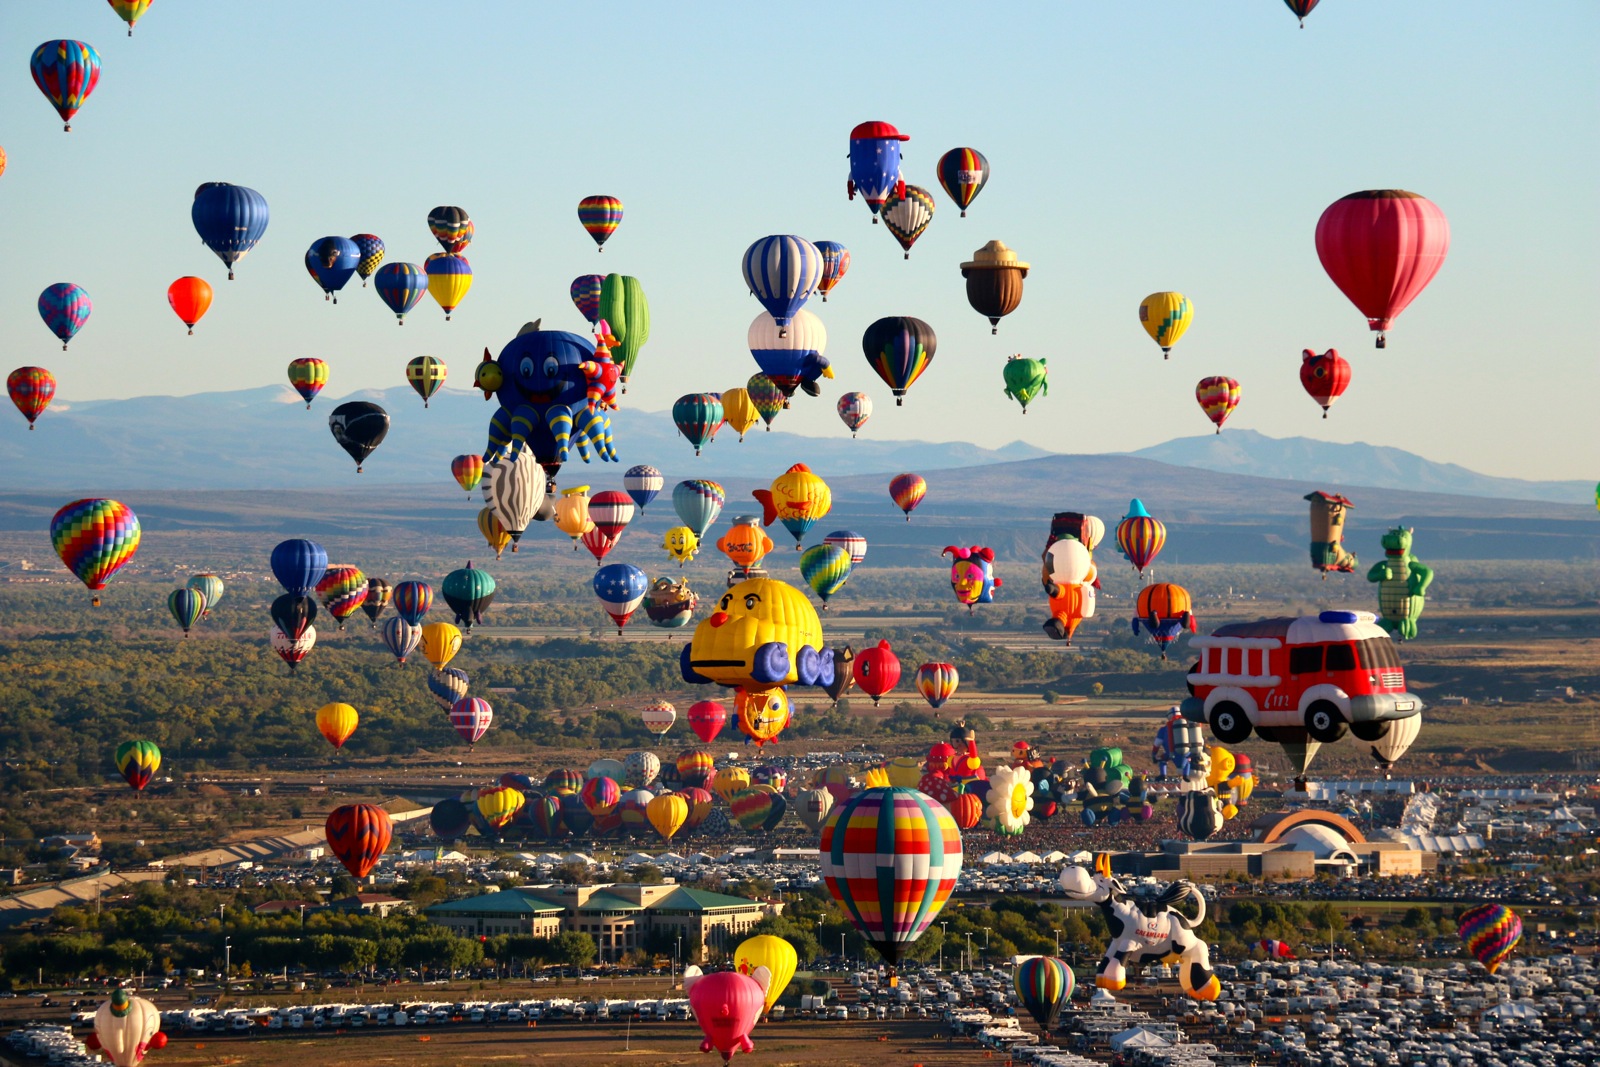 지상최대의 열기구 축제 - 미국 앨버커키, Albuquerque International Balloon Fiesta : 네이버 블로그